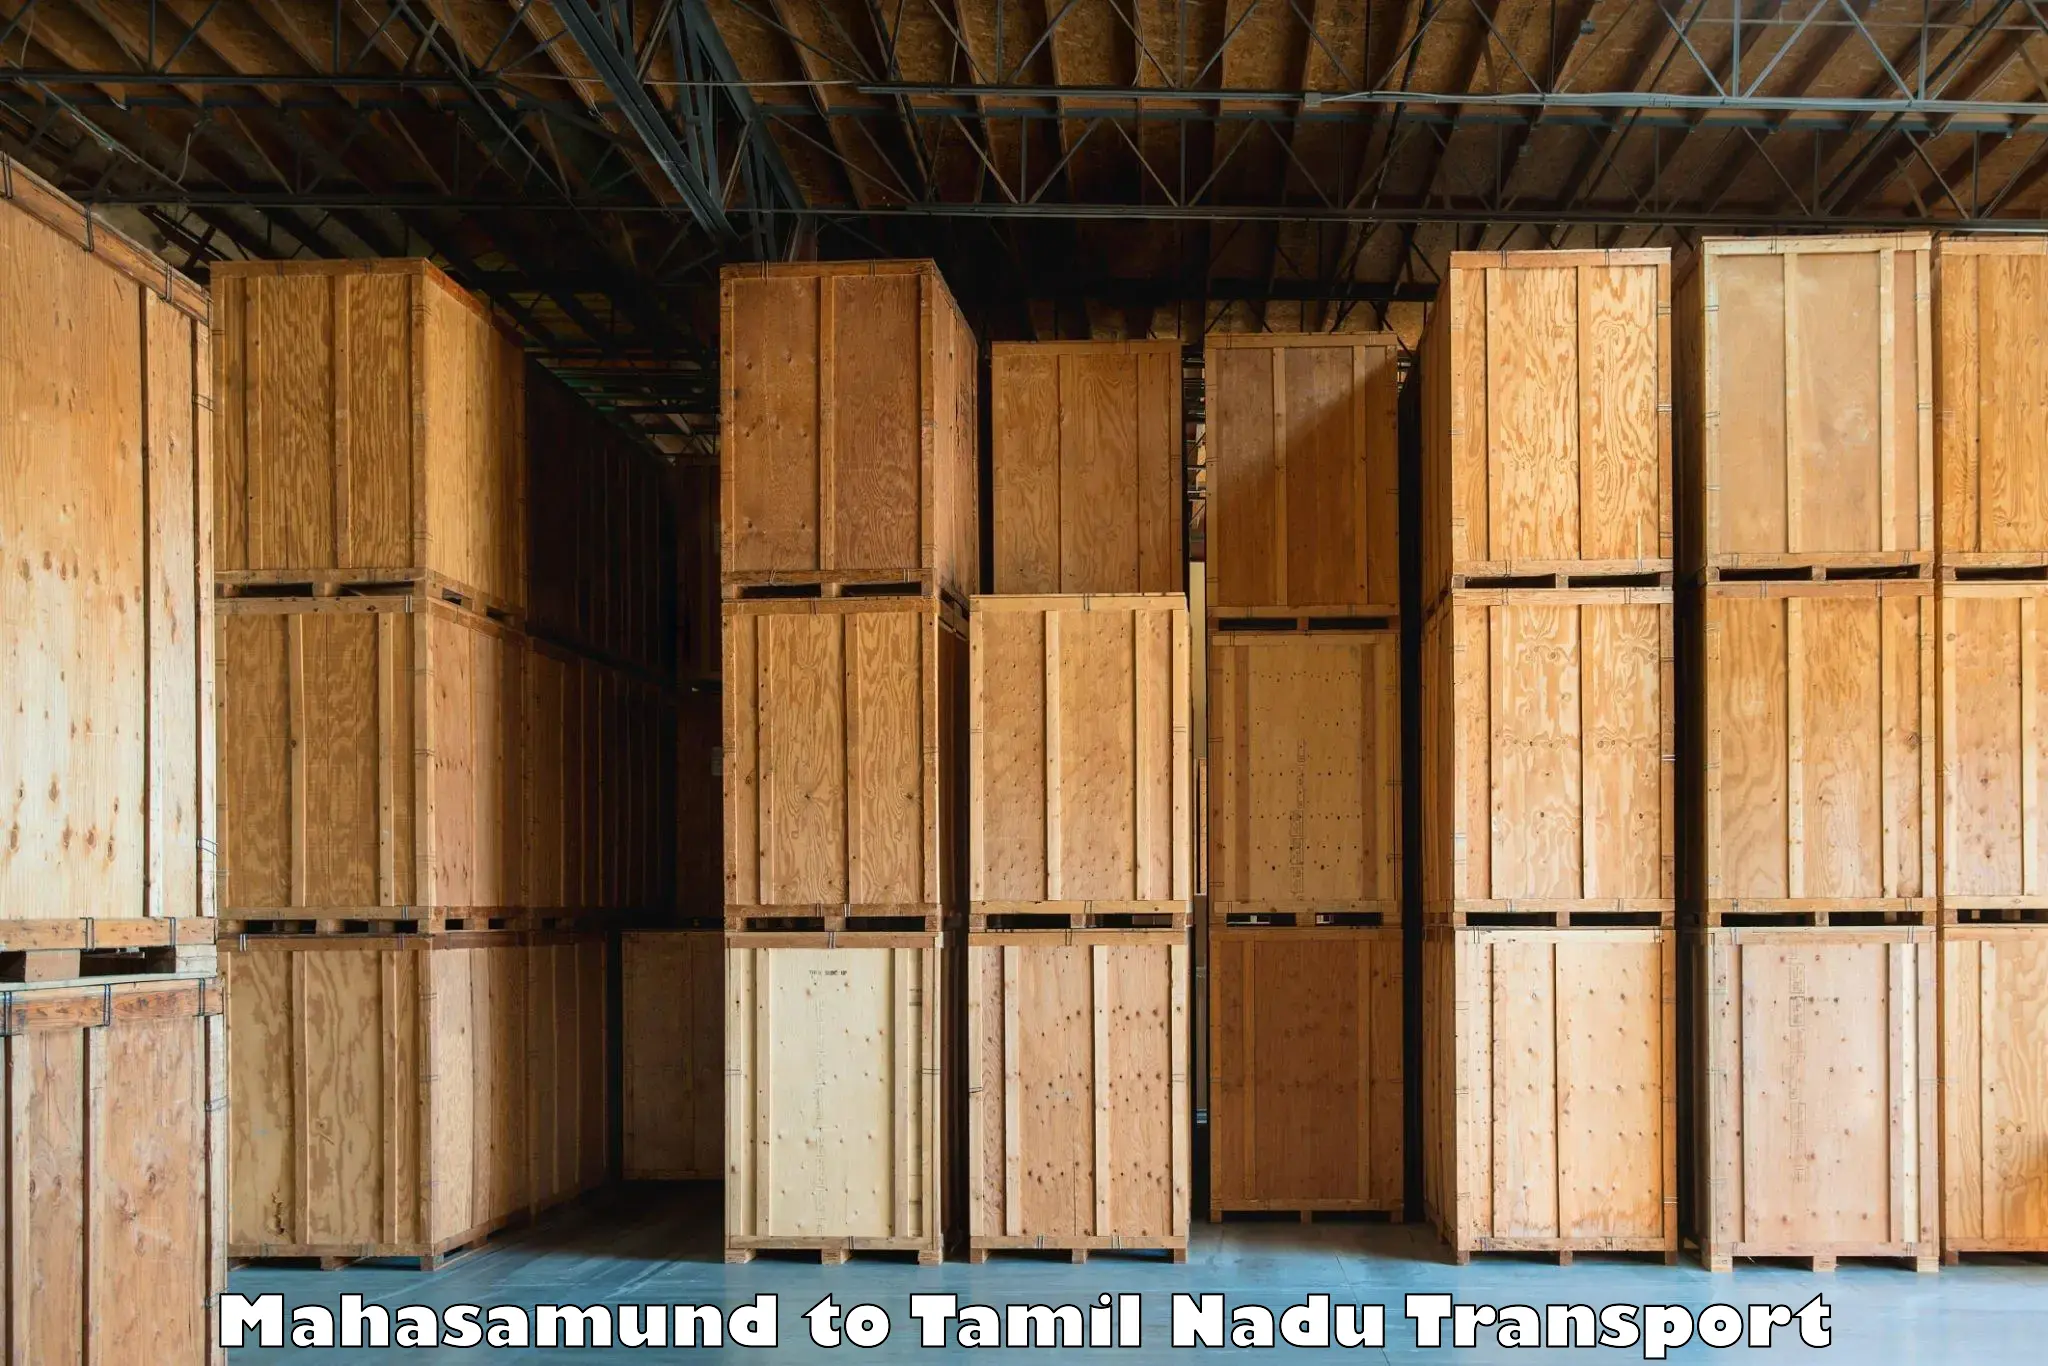 Air cargo transport services Mahasamund to Manamadurai